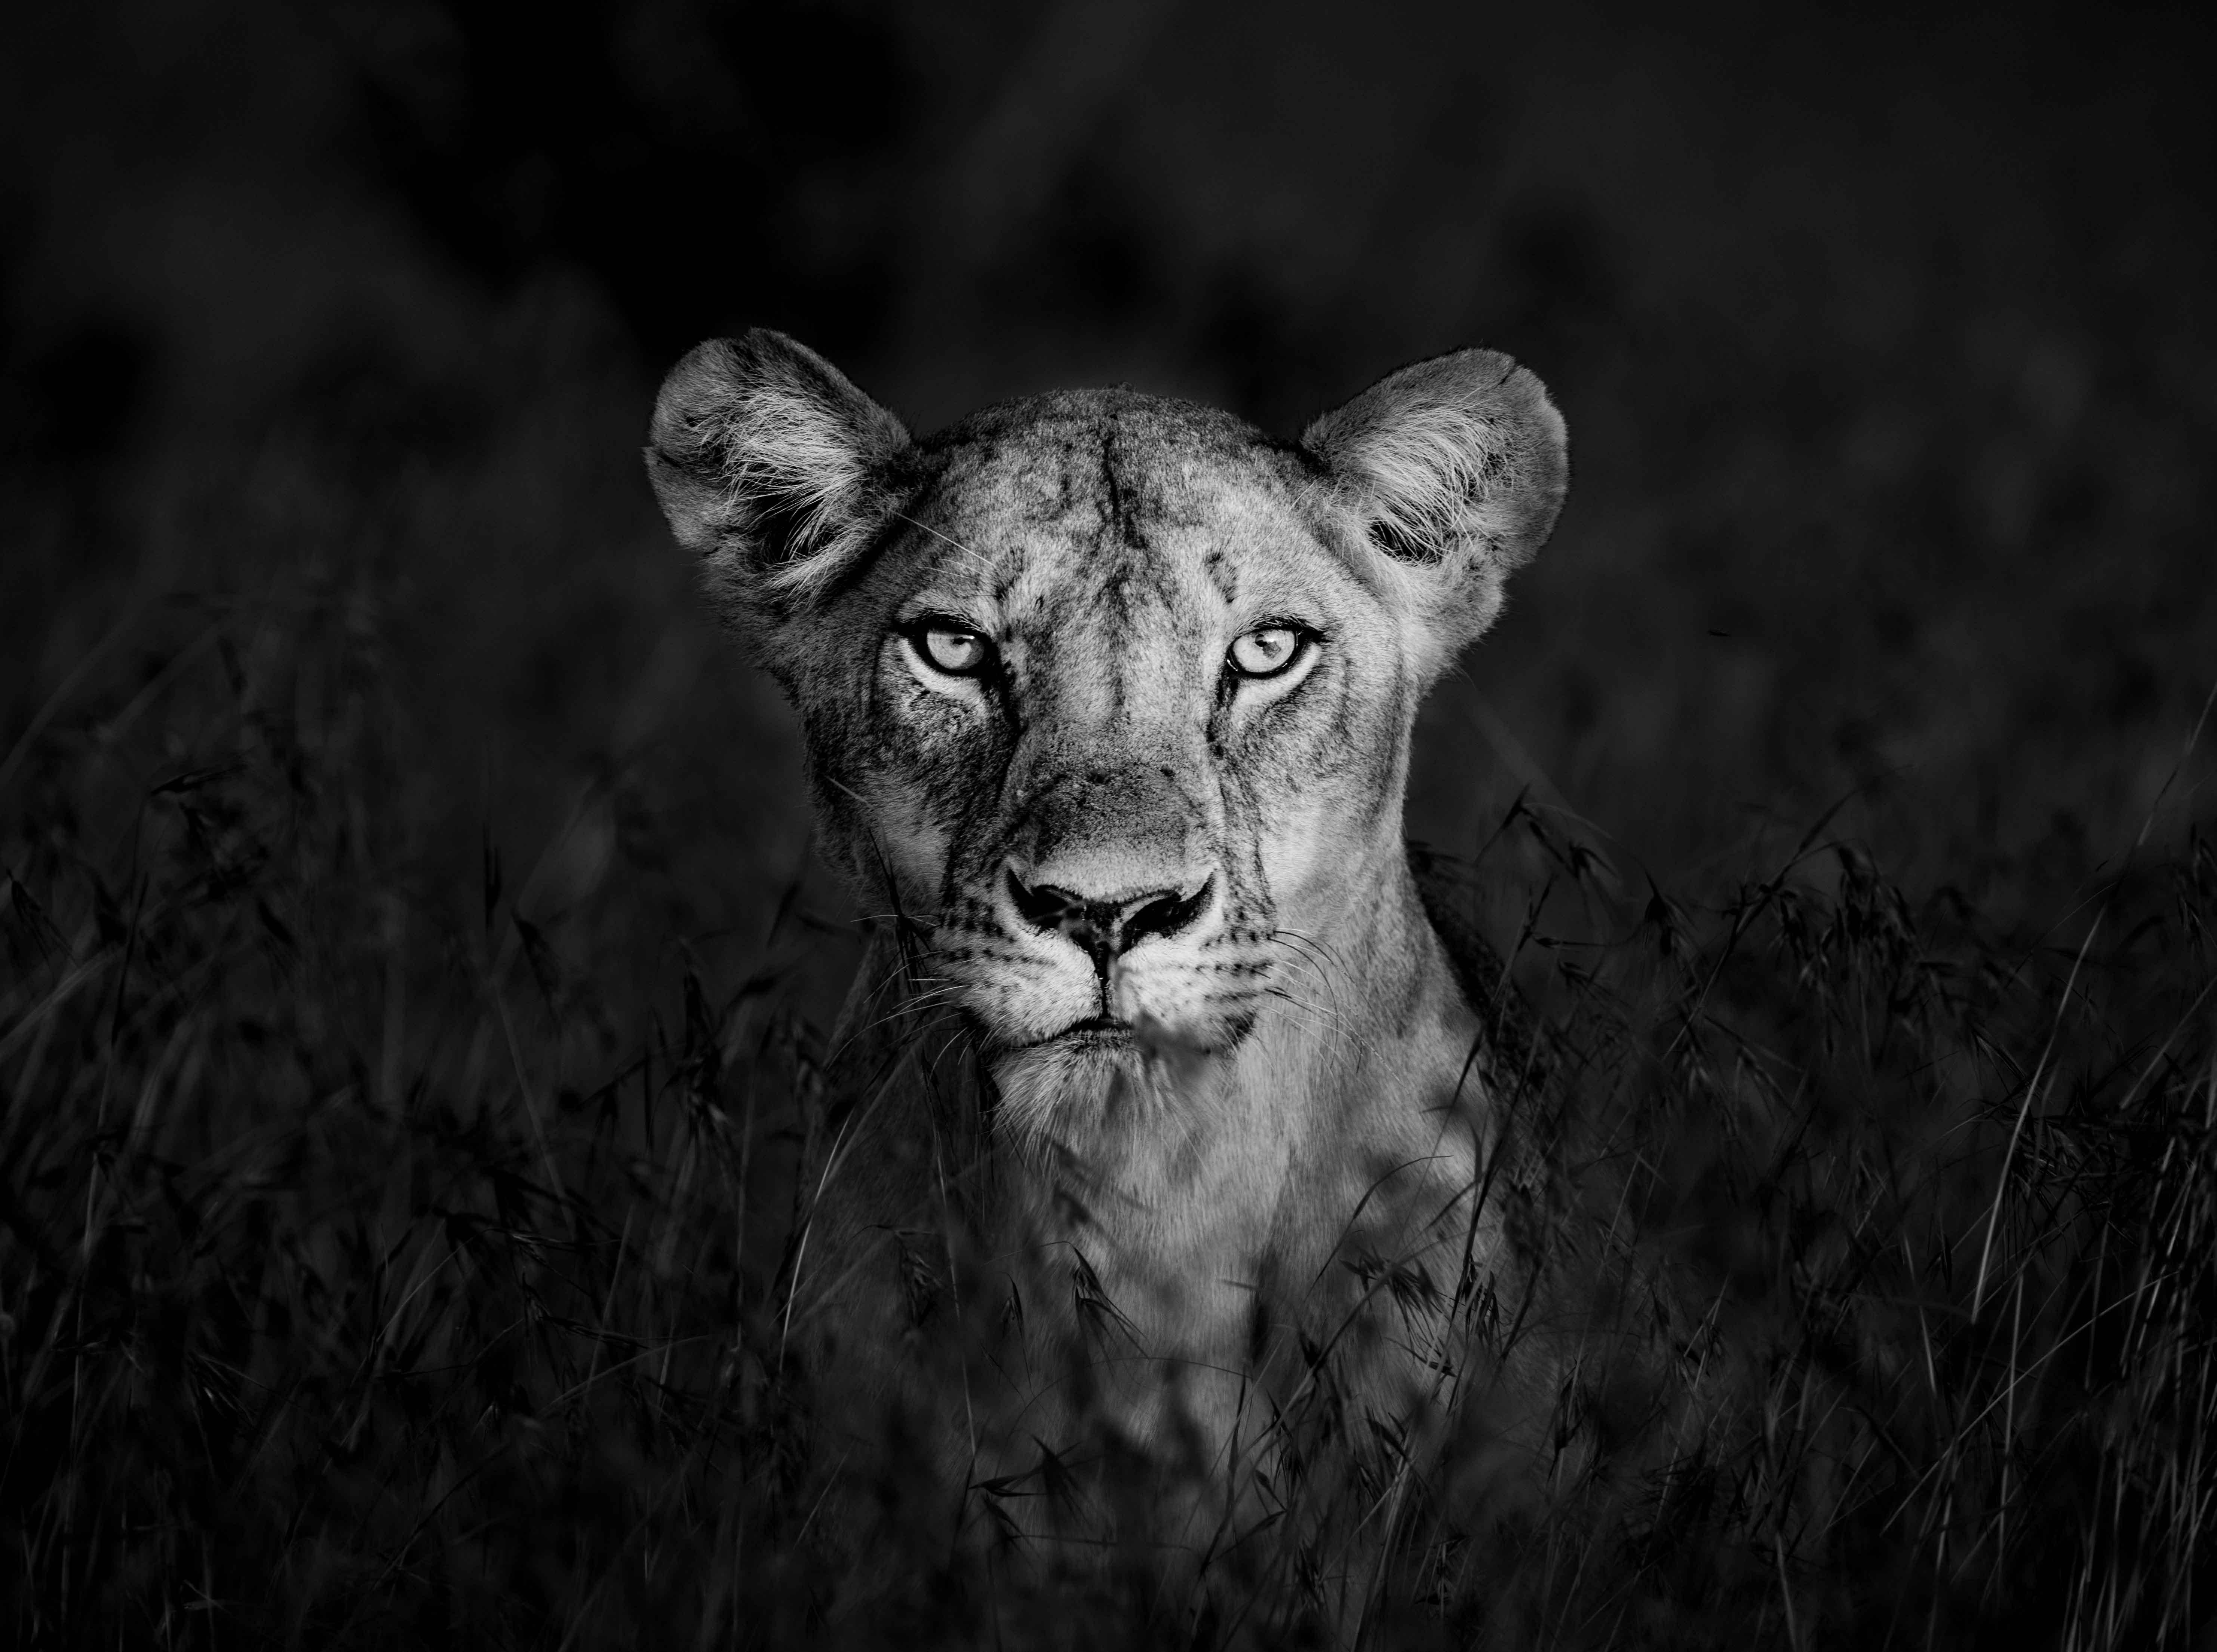 James Lewin - Shadow Huntress, Borana, Kenya, Photography 2020, Printed After